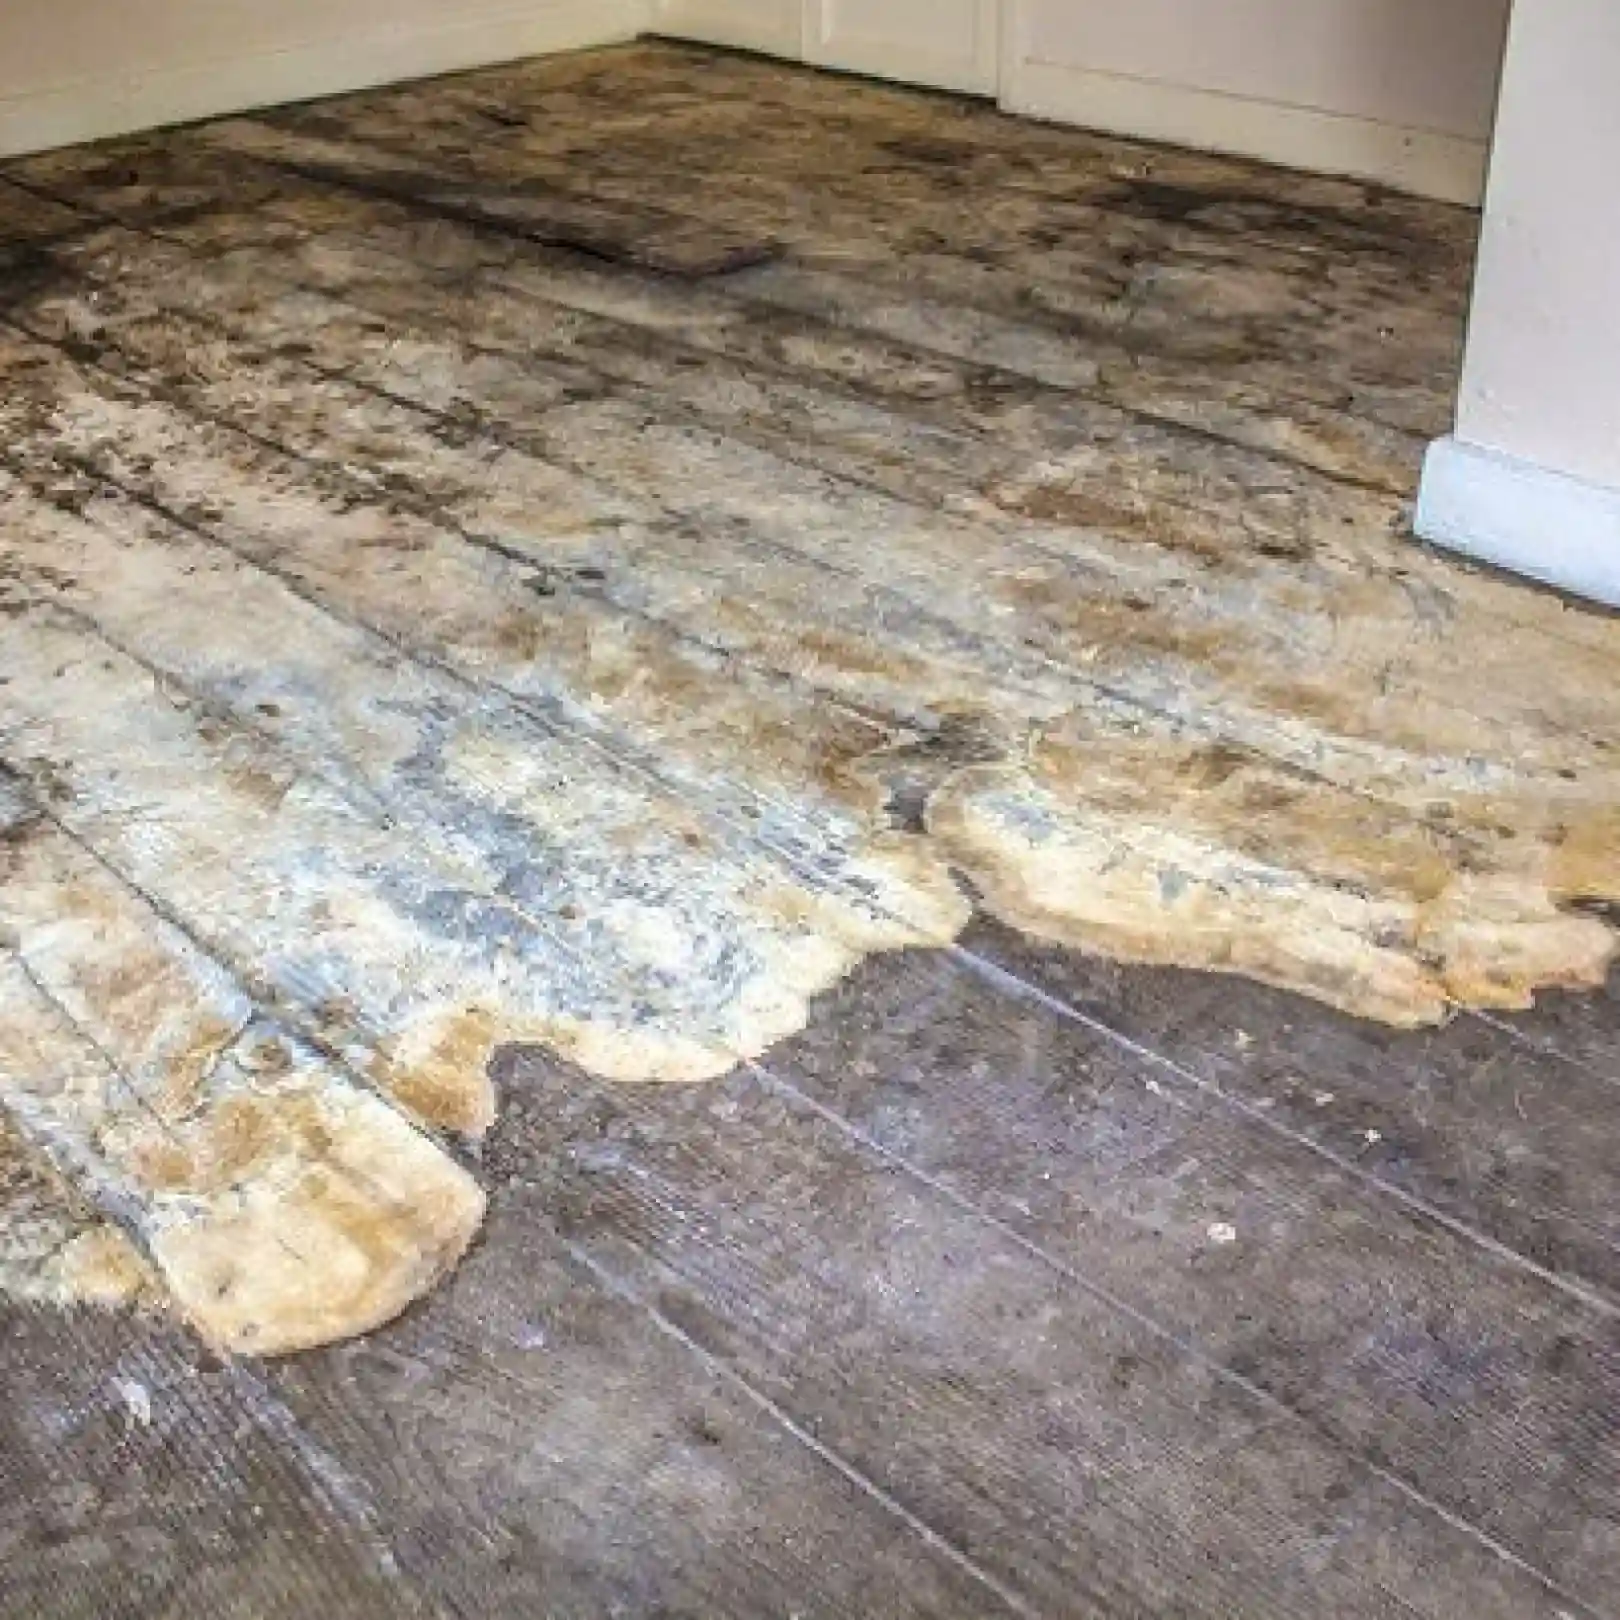 Mouldy floor